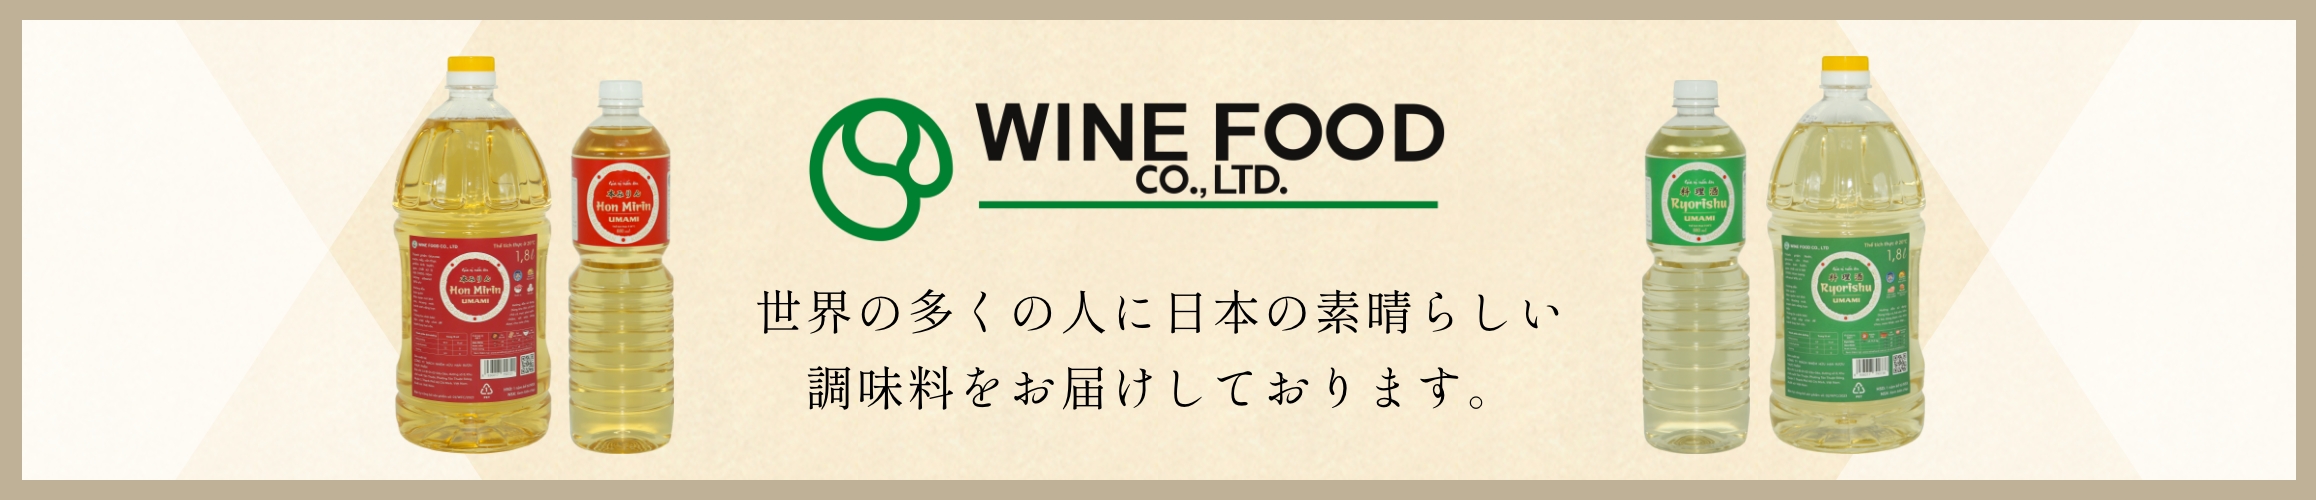 世界の多くの人に日本の素晴らしい調味料をお届けしております。